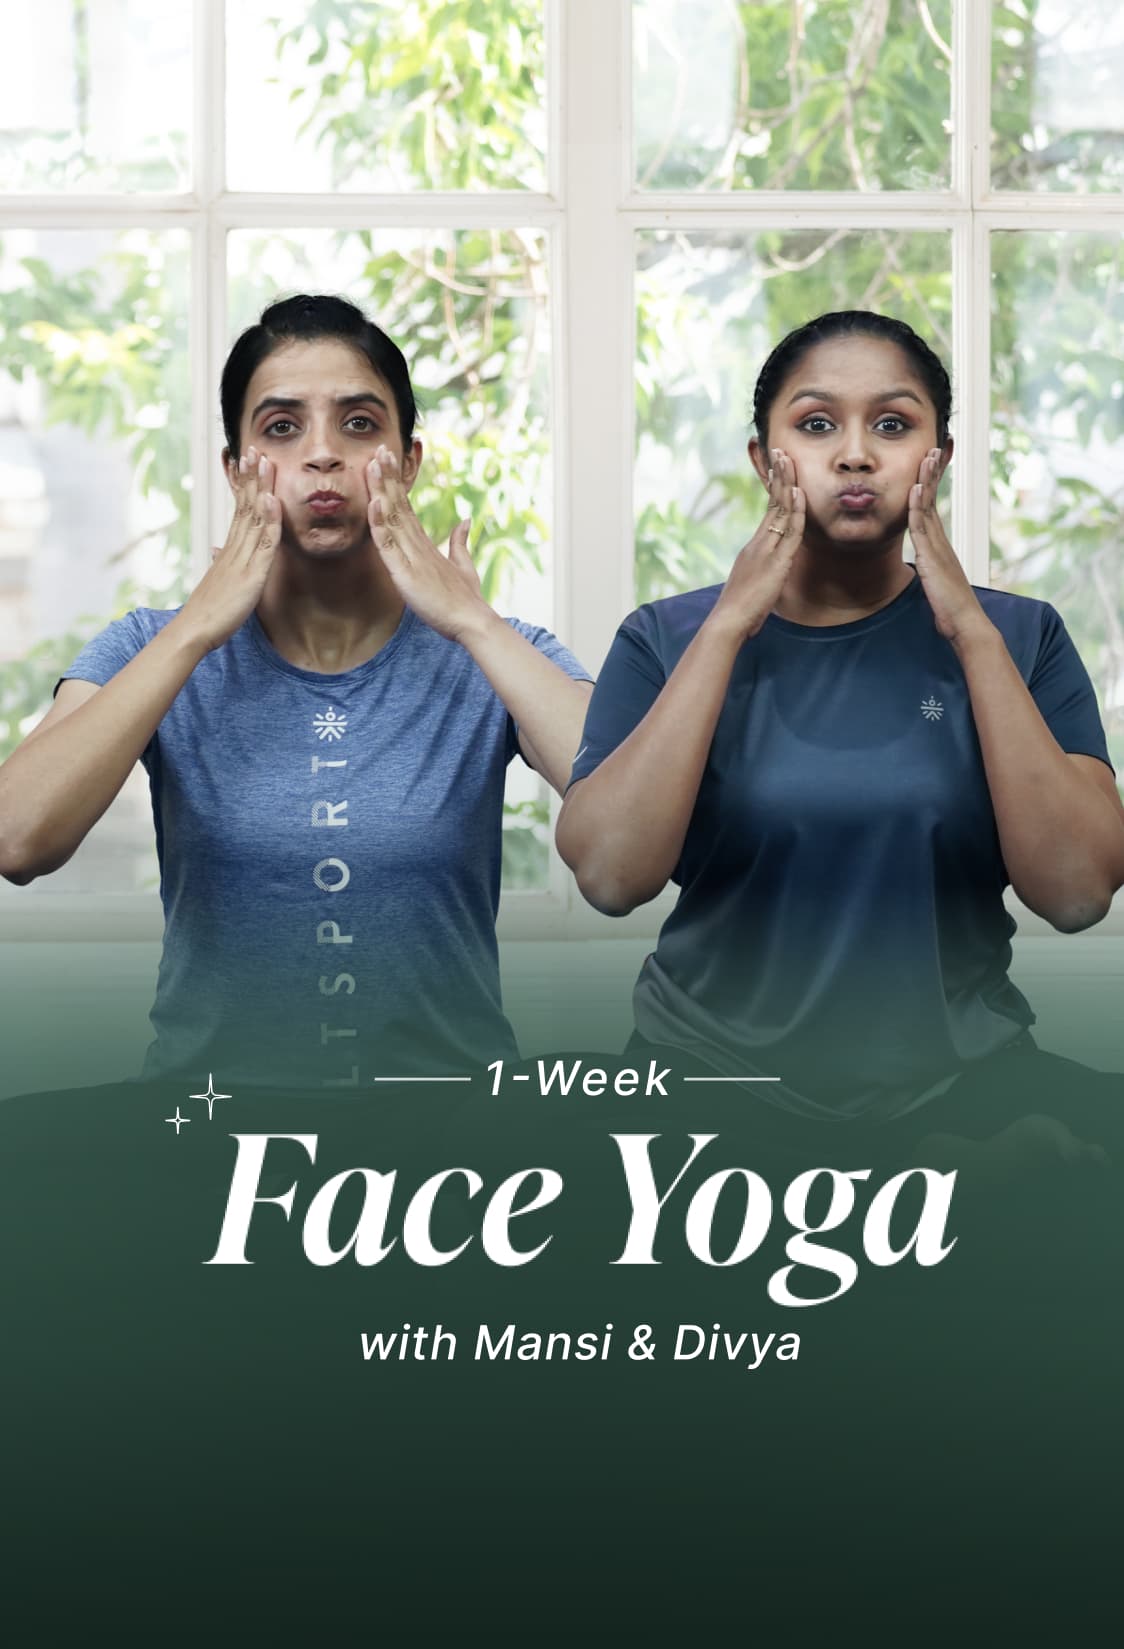 1-Week Face Yoga with Mansi & Divya B